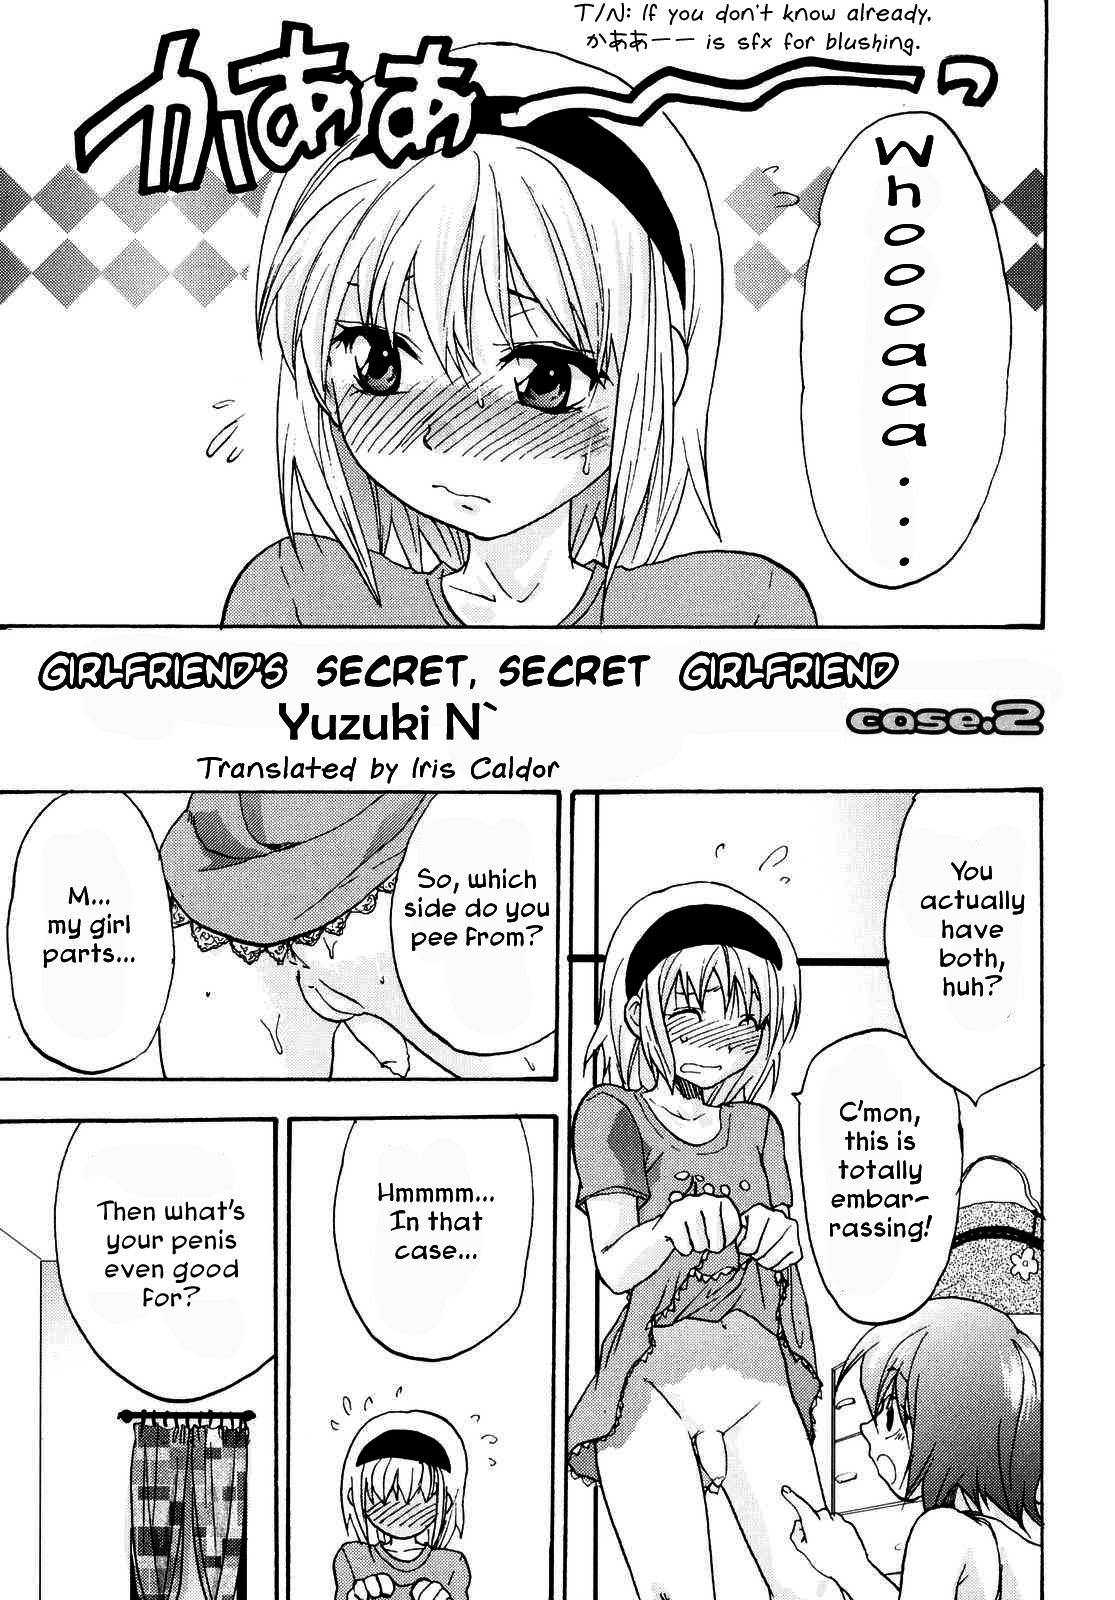 Kanojo no Himitsu to Himitsu no Kanojo case.2 | Girlfriend's Secret, Secret Girlfriend - Case 2 0